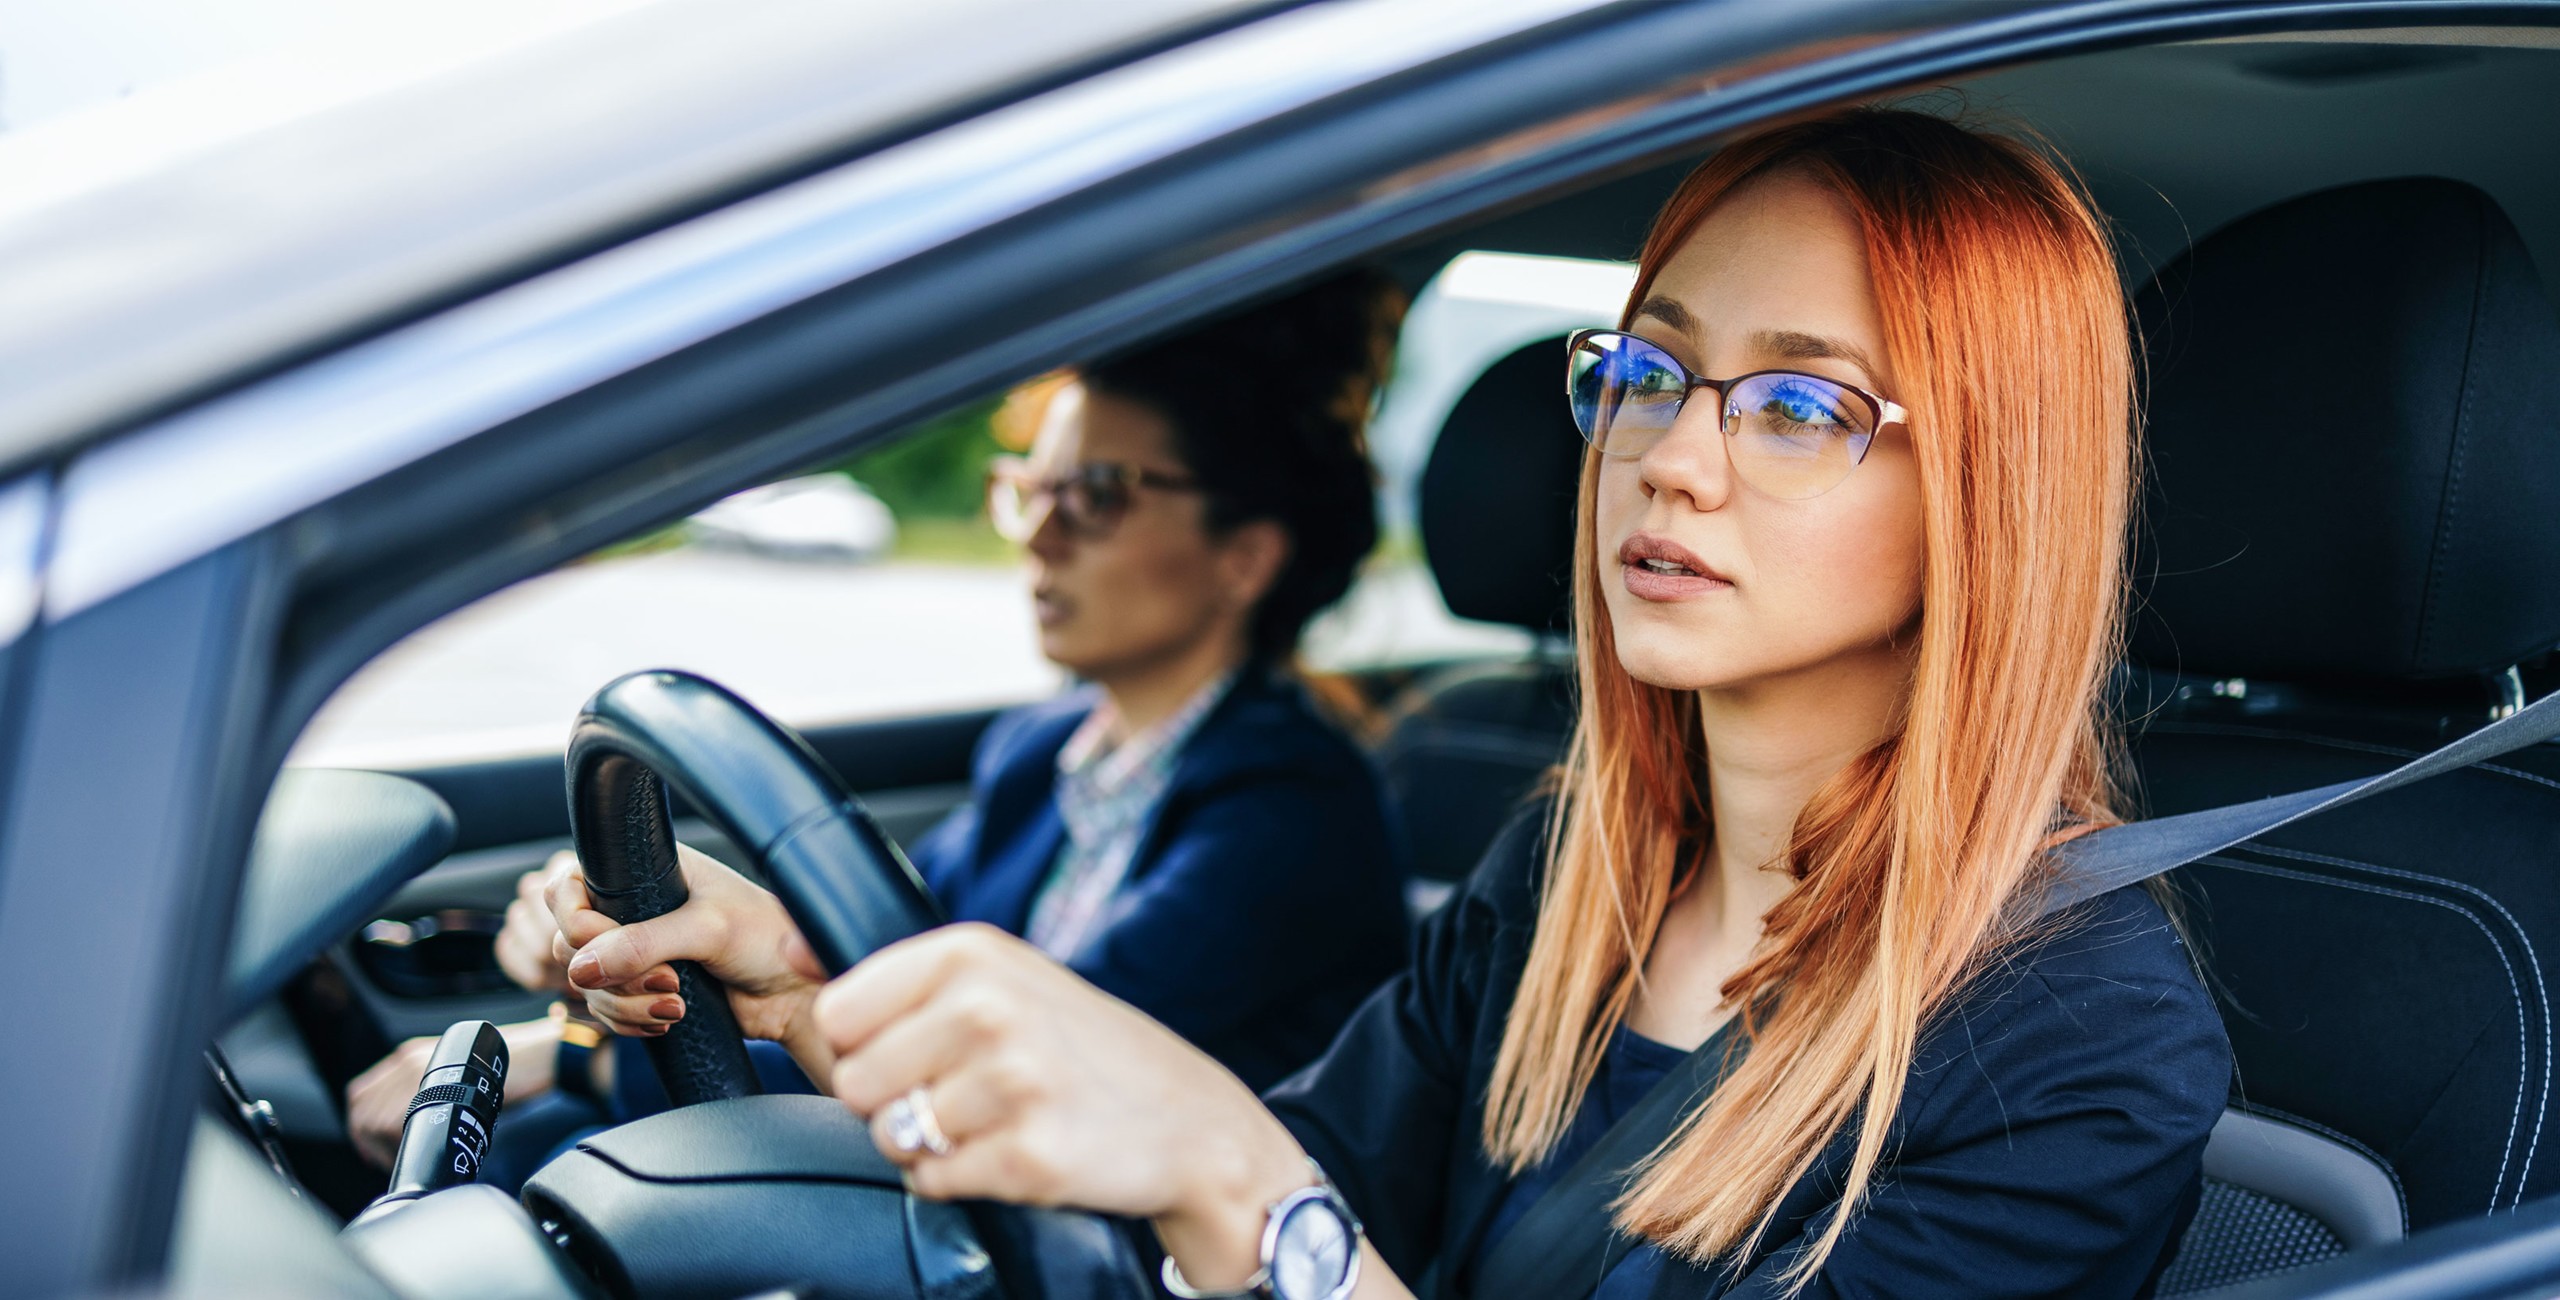 Eine junge rothaarige Frau mit Brille sitzt am Steuer und schaut konzentriert auf die Strasse, während eine ältere Beifahrerin neben ihr sitzt.